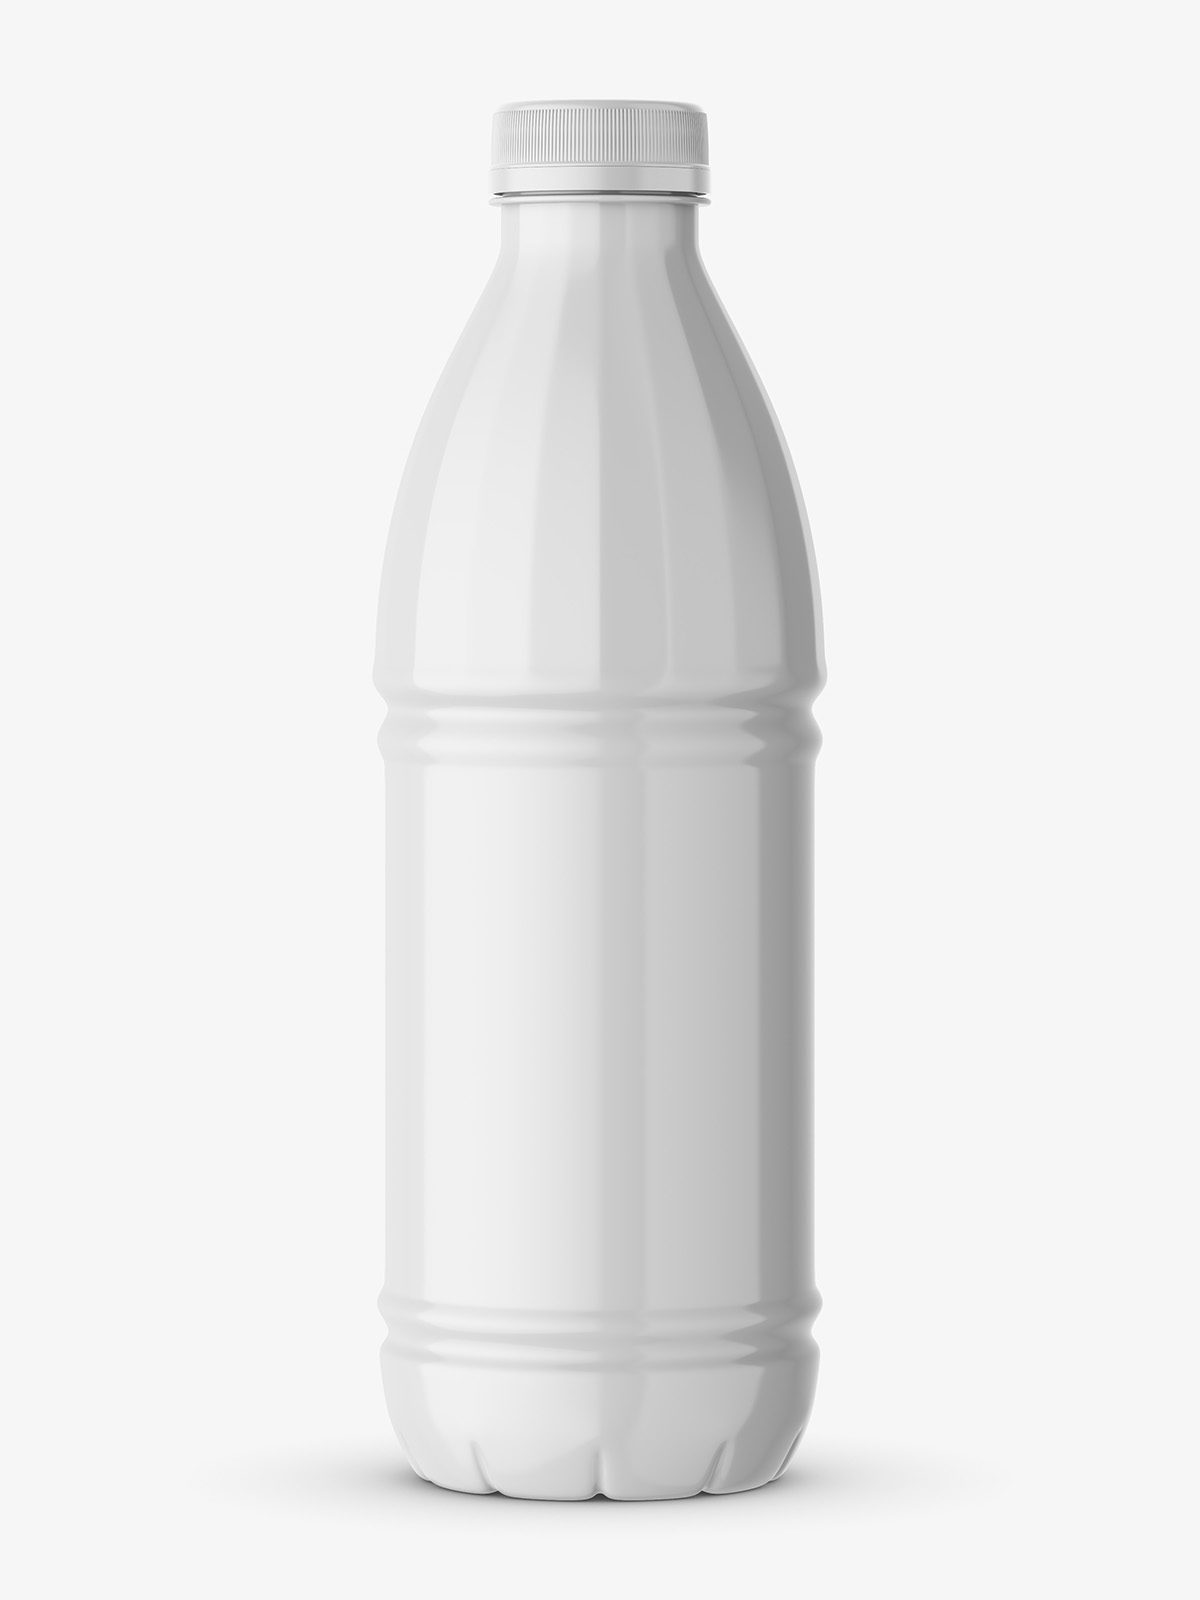 Download Milk bottle mockup - Smarty Mockups